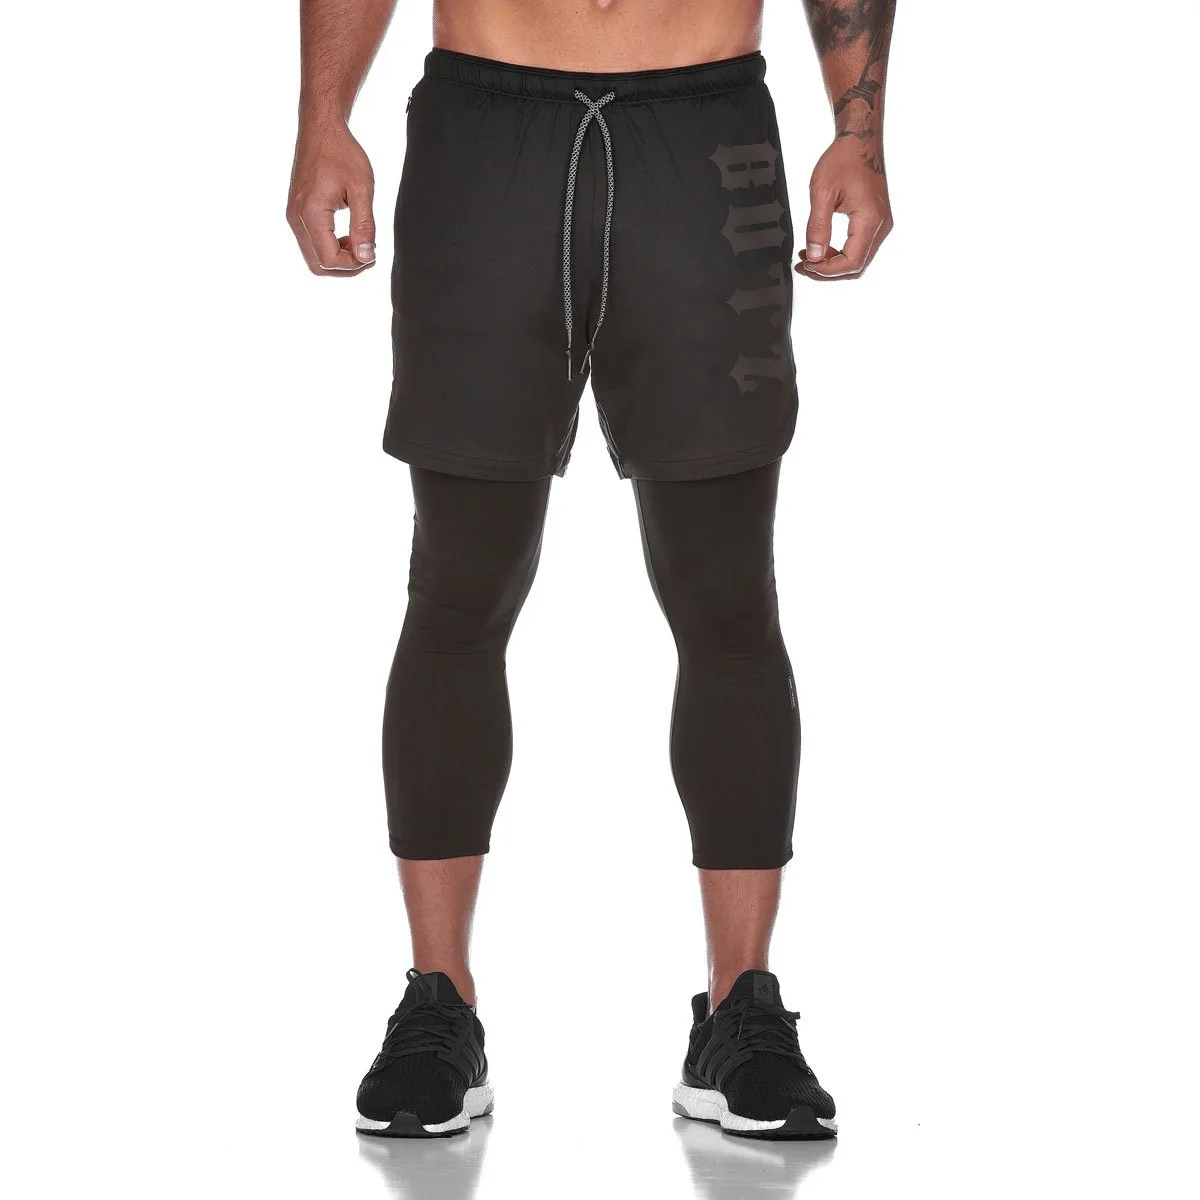 Новые поддельные 2 в 1 мужские укороченные штаны для тренажерного зала обтягивающие эластичные брюки быстросохнущие леггинсы мужские брюки